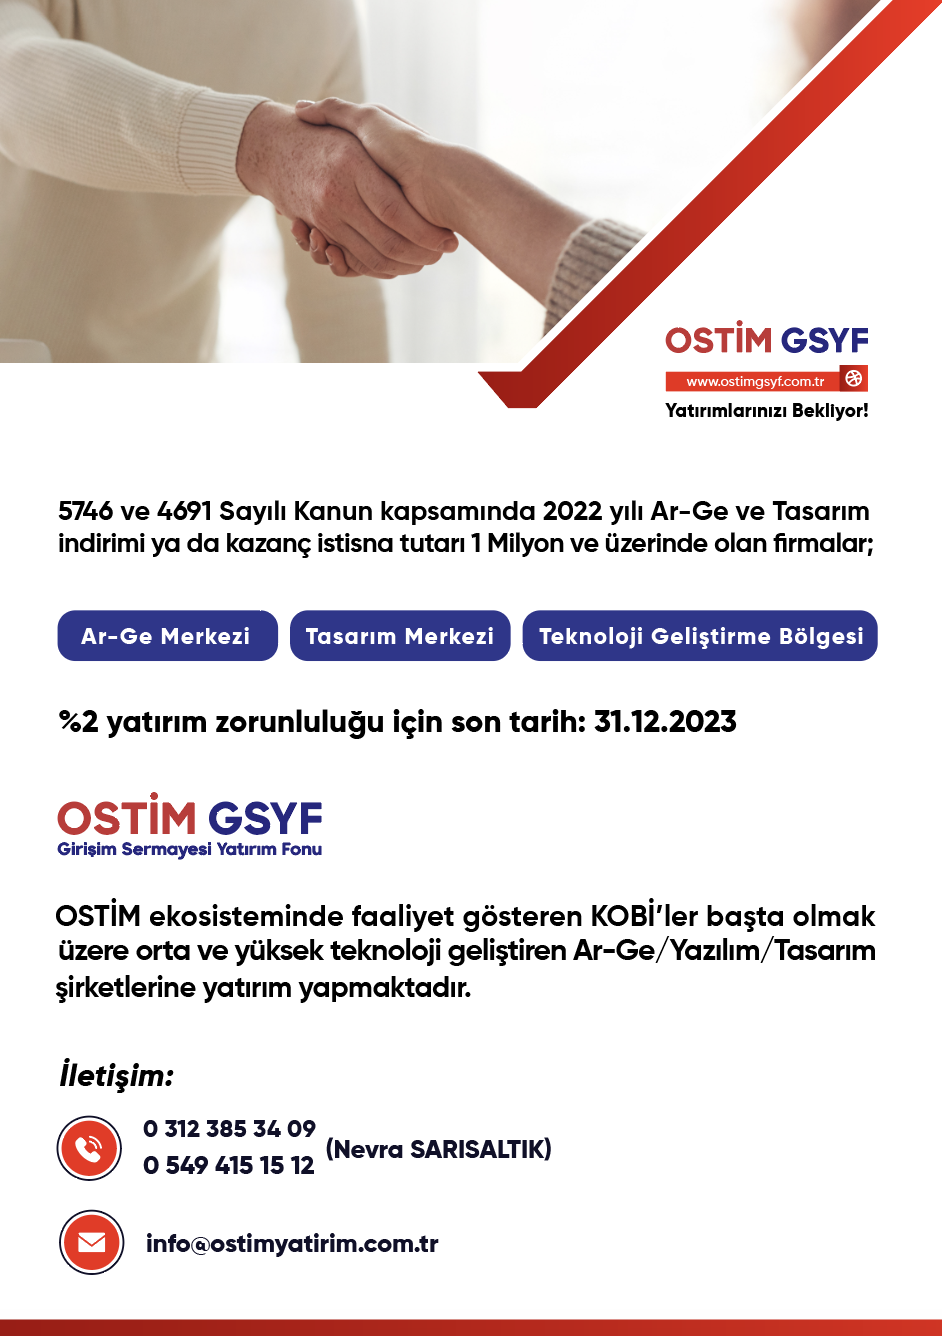 OSTİM GSYF Yatırımlarınızı Bekliyor!